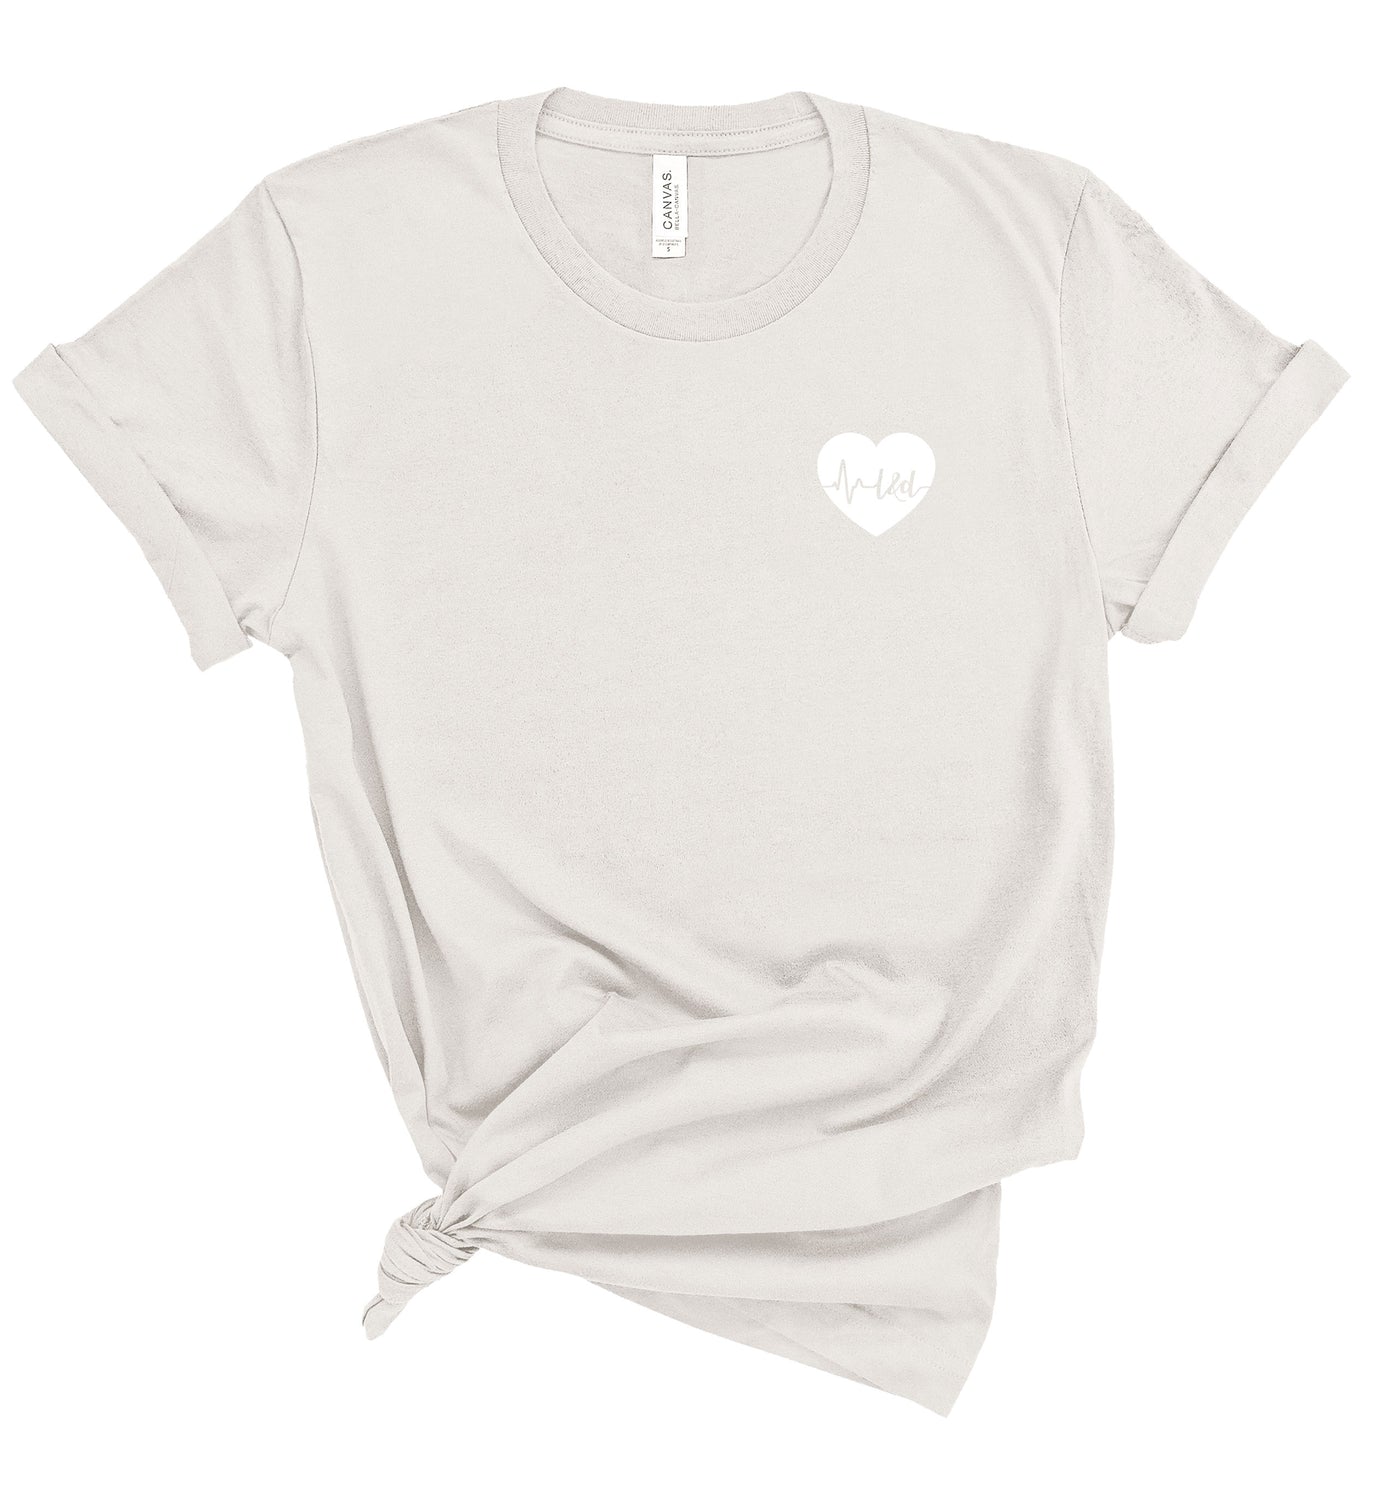 L&D ECG Heart - Shirt